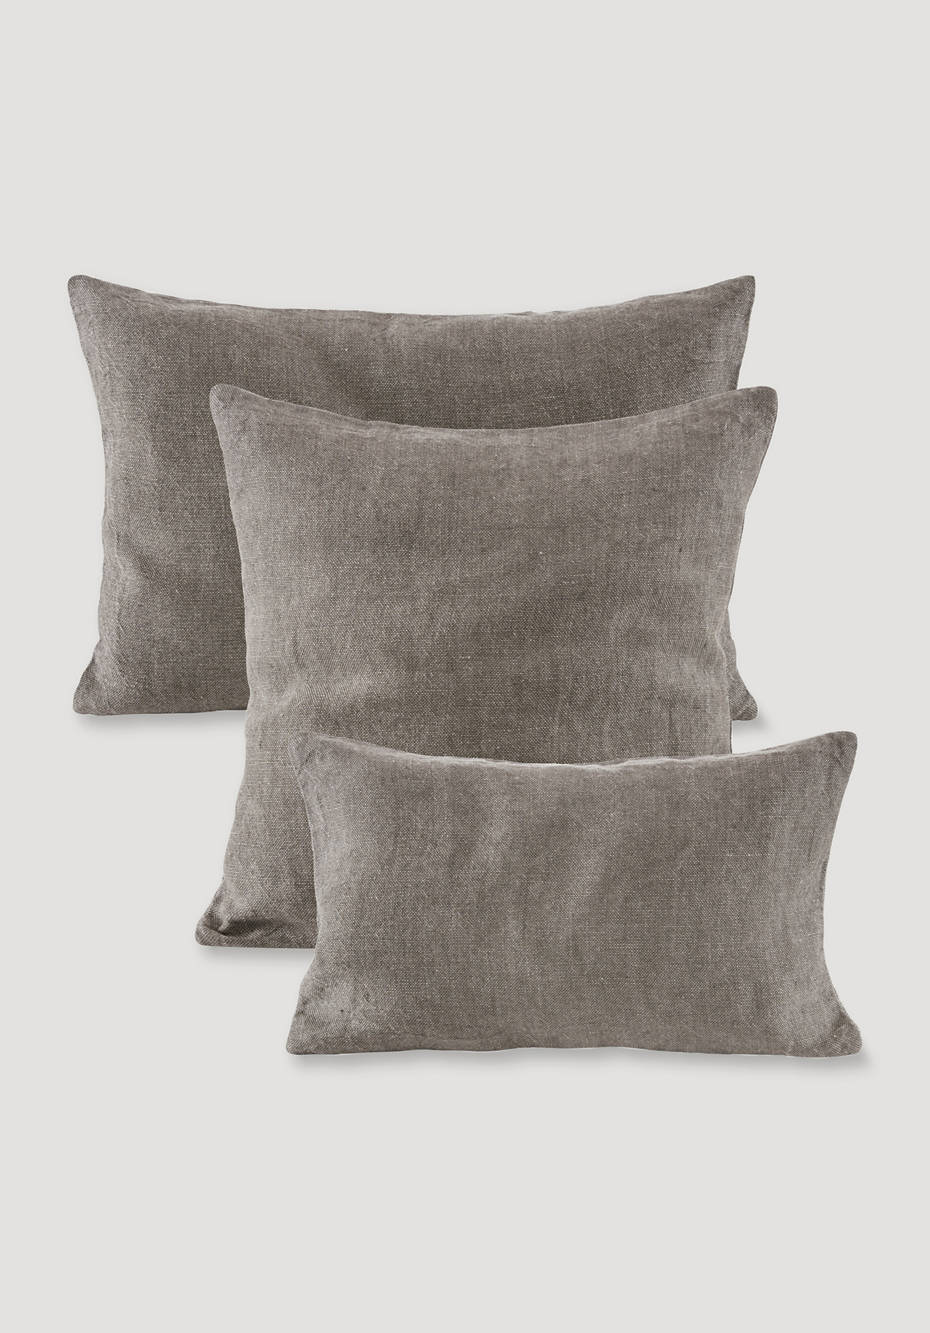 Pure linen cushion cover Lavi